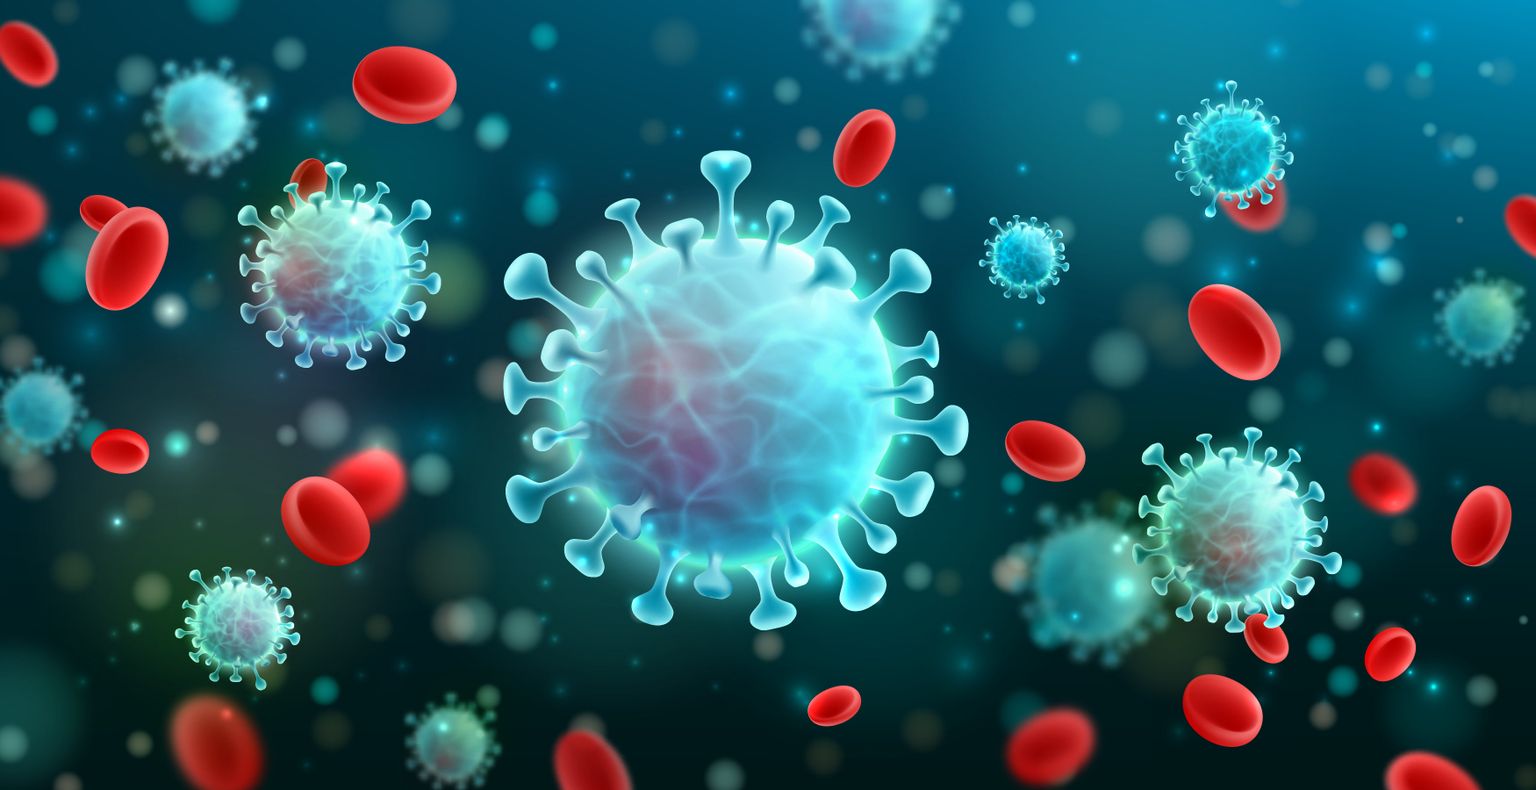 Vektorillustration von Coronavirus 2019-nCoV und Virushintergrund mit Krankheitszellen und roten Blutkörperchen.COVID-19 Corona-Virus ausgebrochenes und pandemisches Konzept für das medizinische Gesundhei